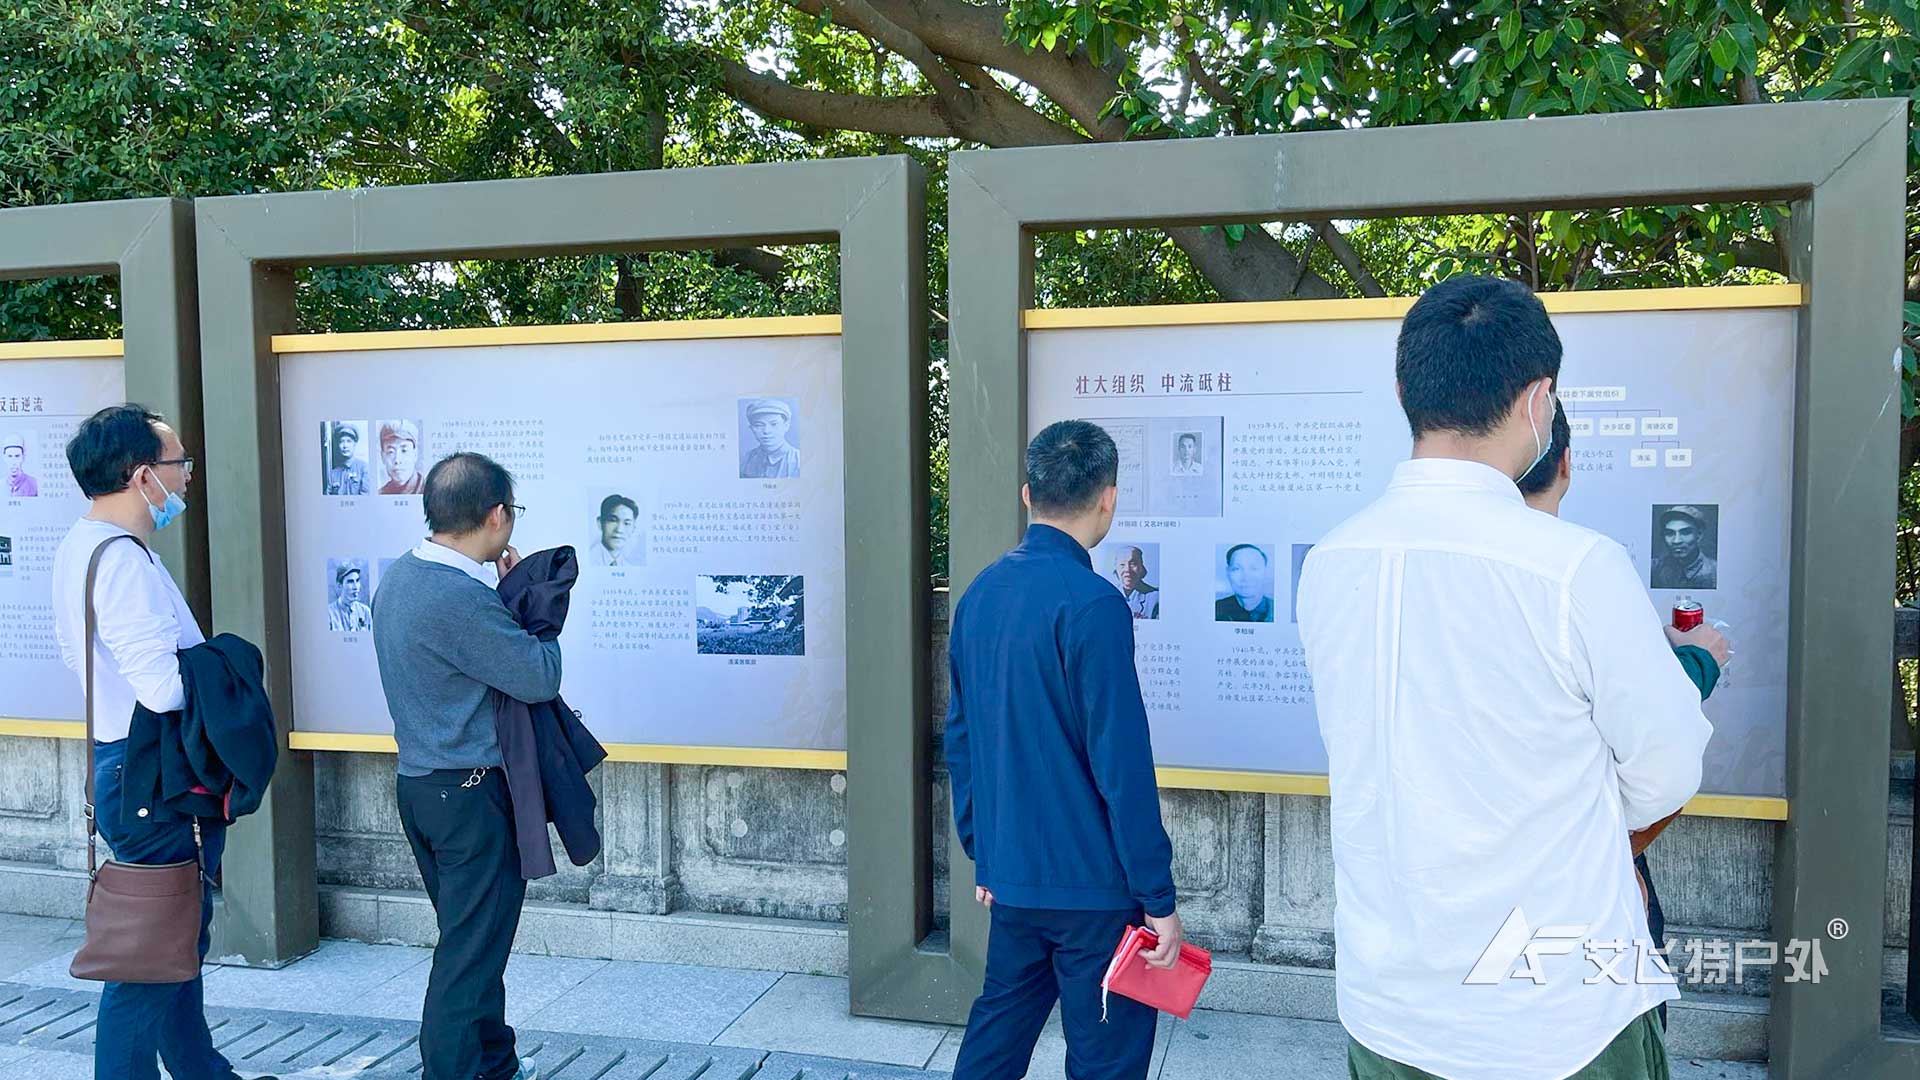 学员于塘厦观光公园革命烈士纪念碑前参观学革命历史。